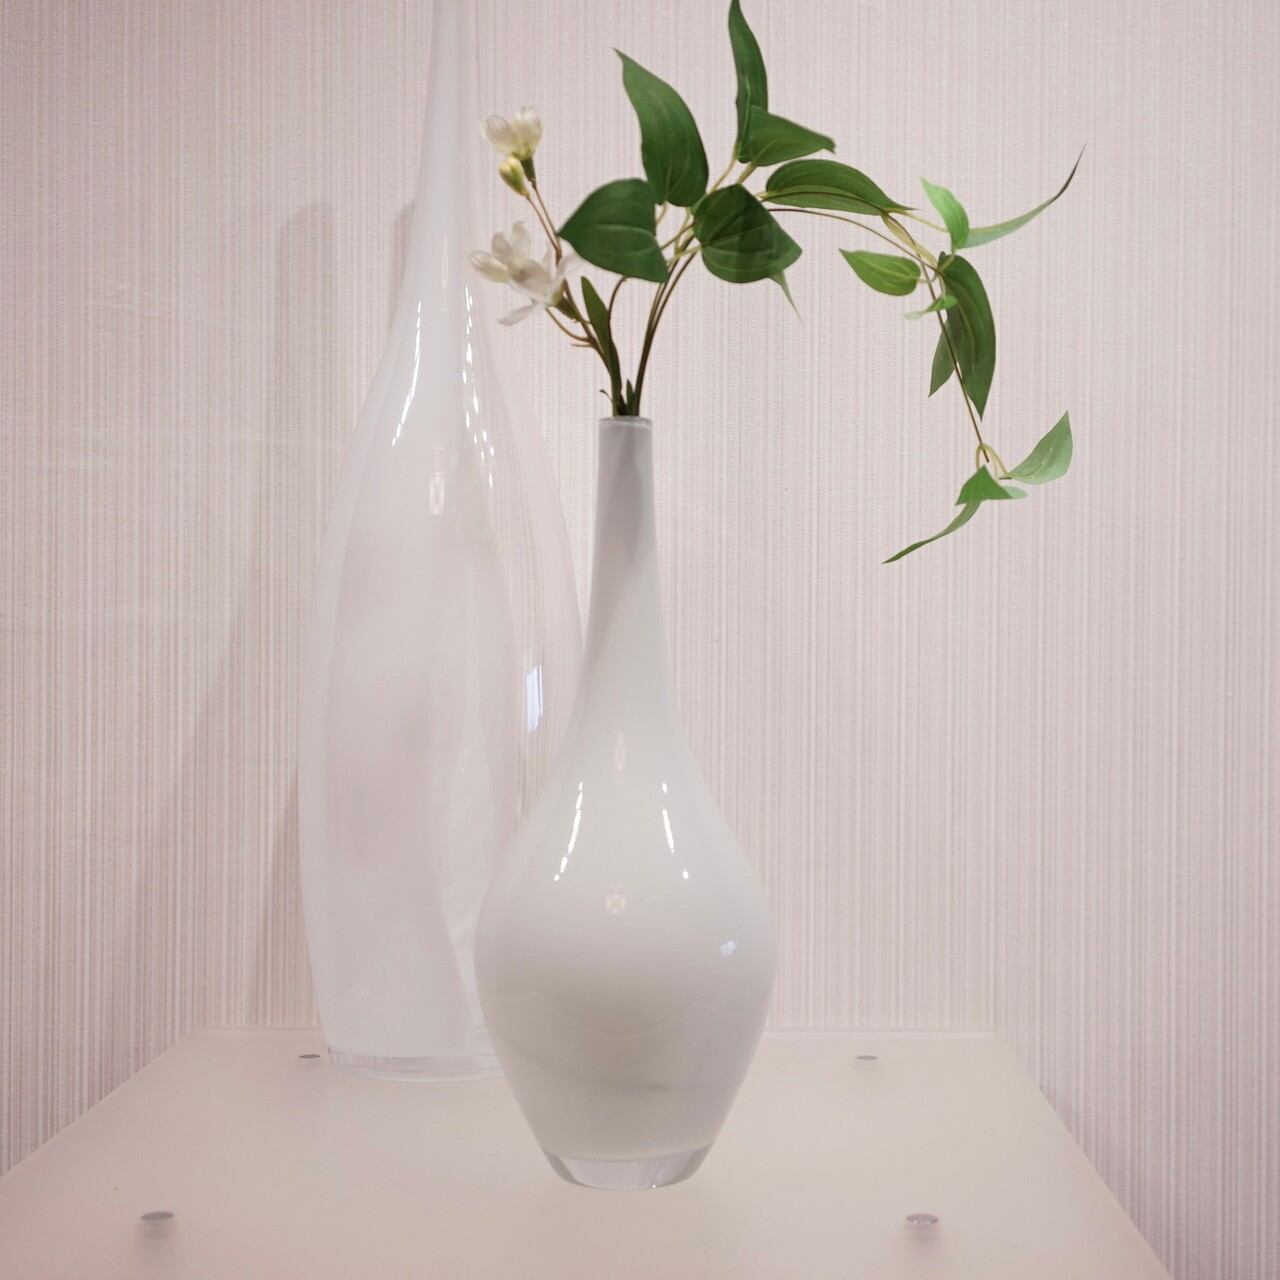 Bello's Itemフラワーベース/花瓶個セット/造花付き/ガラス